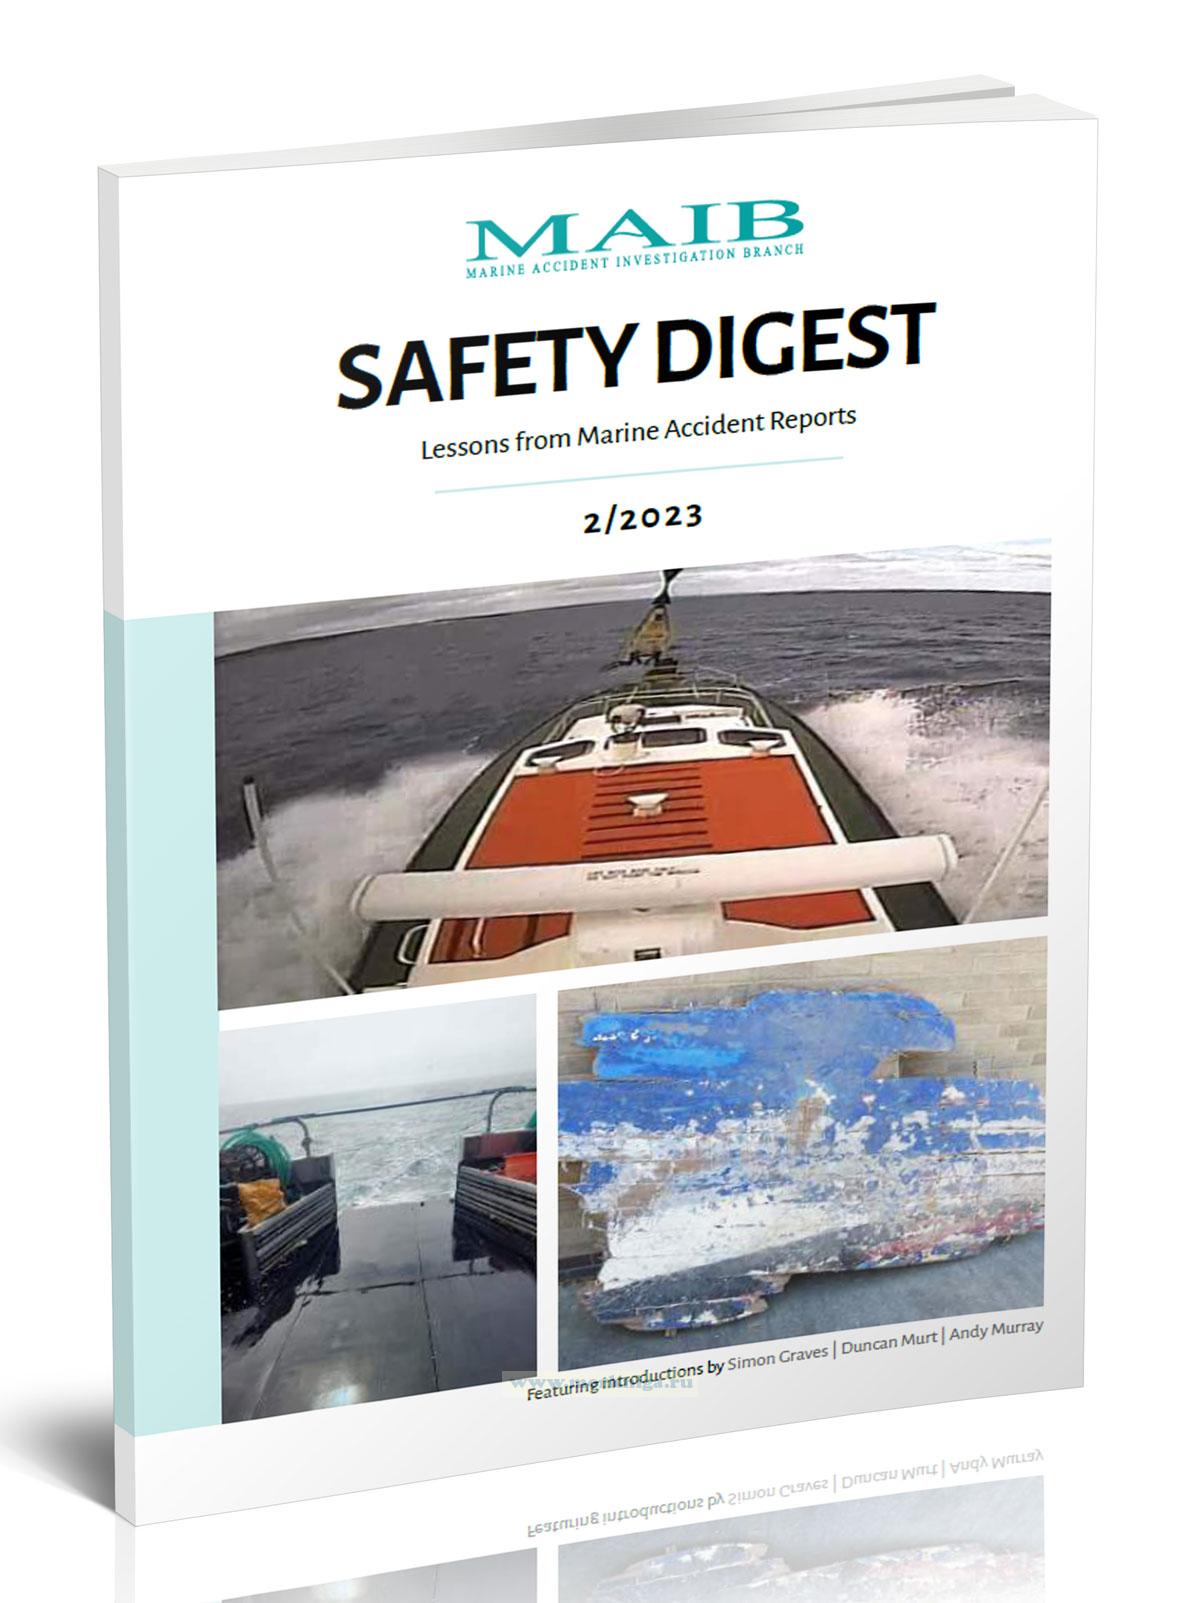 Safety digest Lessons from Marine Accident Reports 2/2023/Сборник уроков по безопасности, извлеченных из отчетов о морских авариях 2/2023